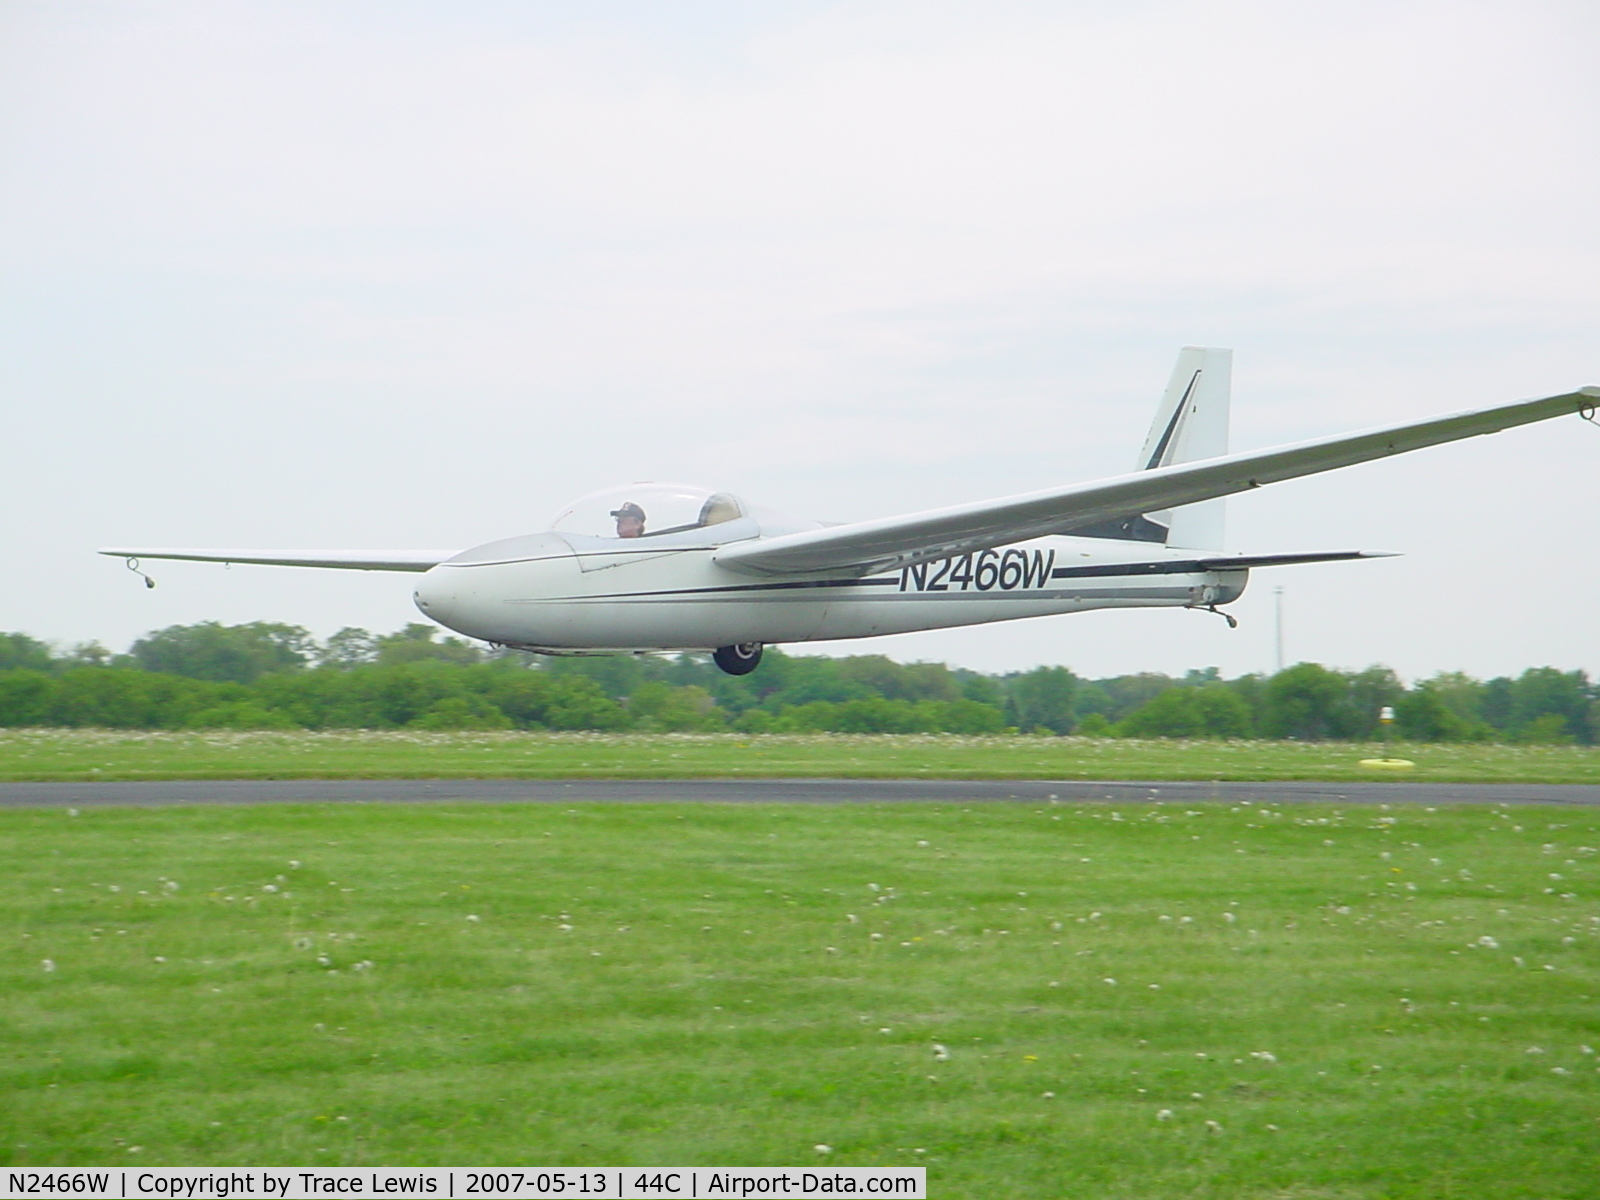 N2466W, 1967 Schweizer SGS 2-32 C/N 48, 3-seat glider